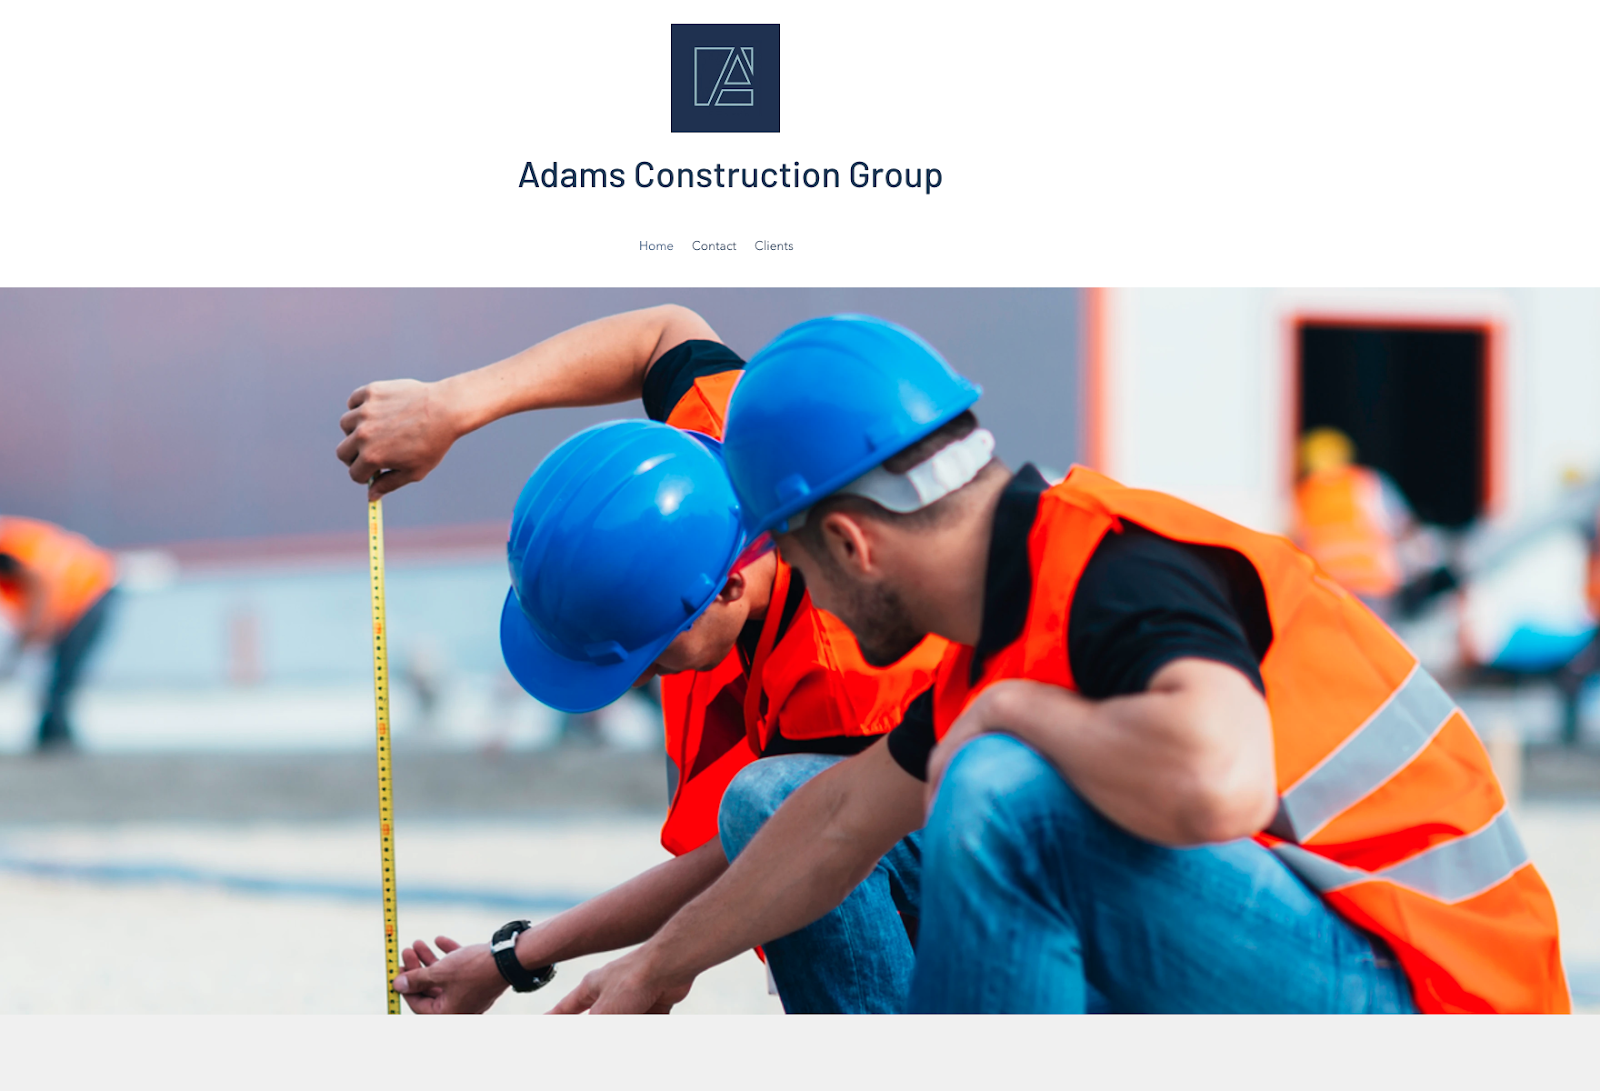 Adams Construction Group AI Website Design ExampleIMG name: adams